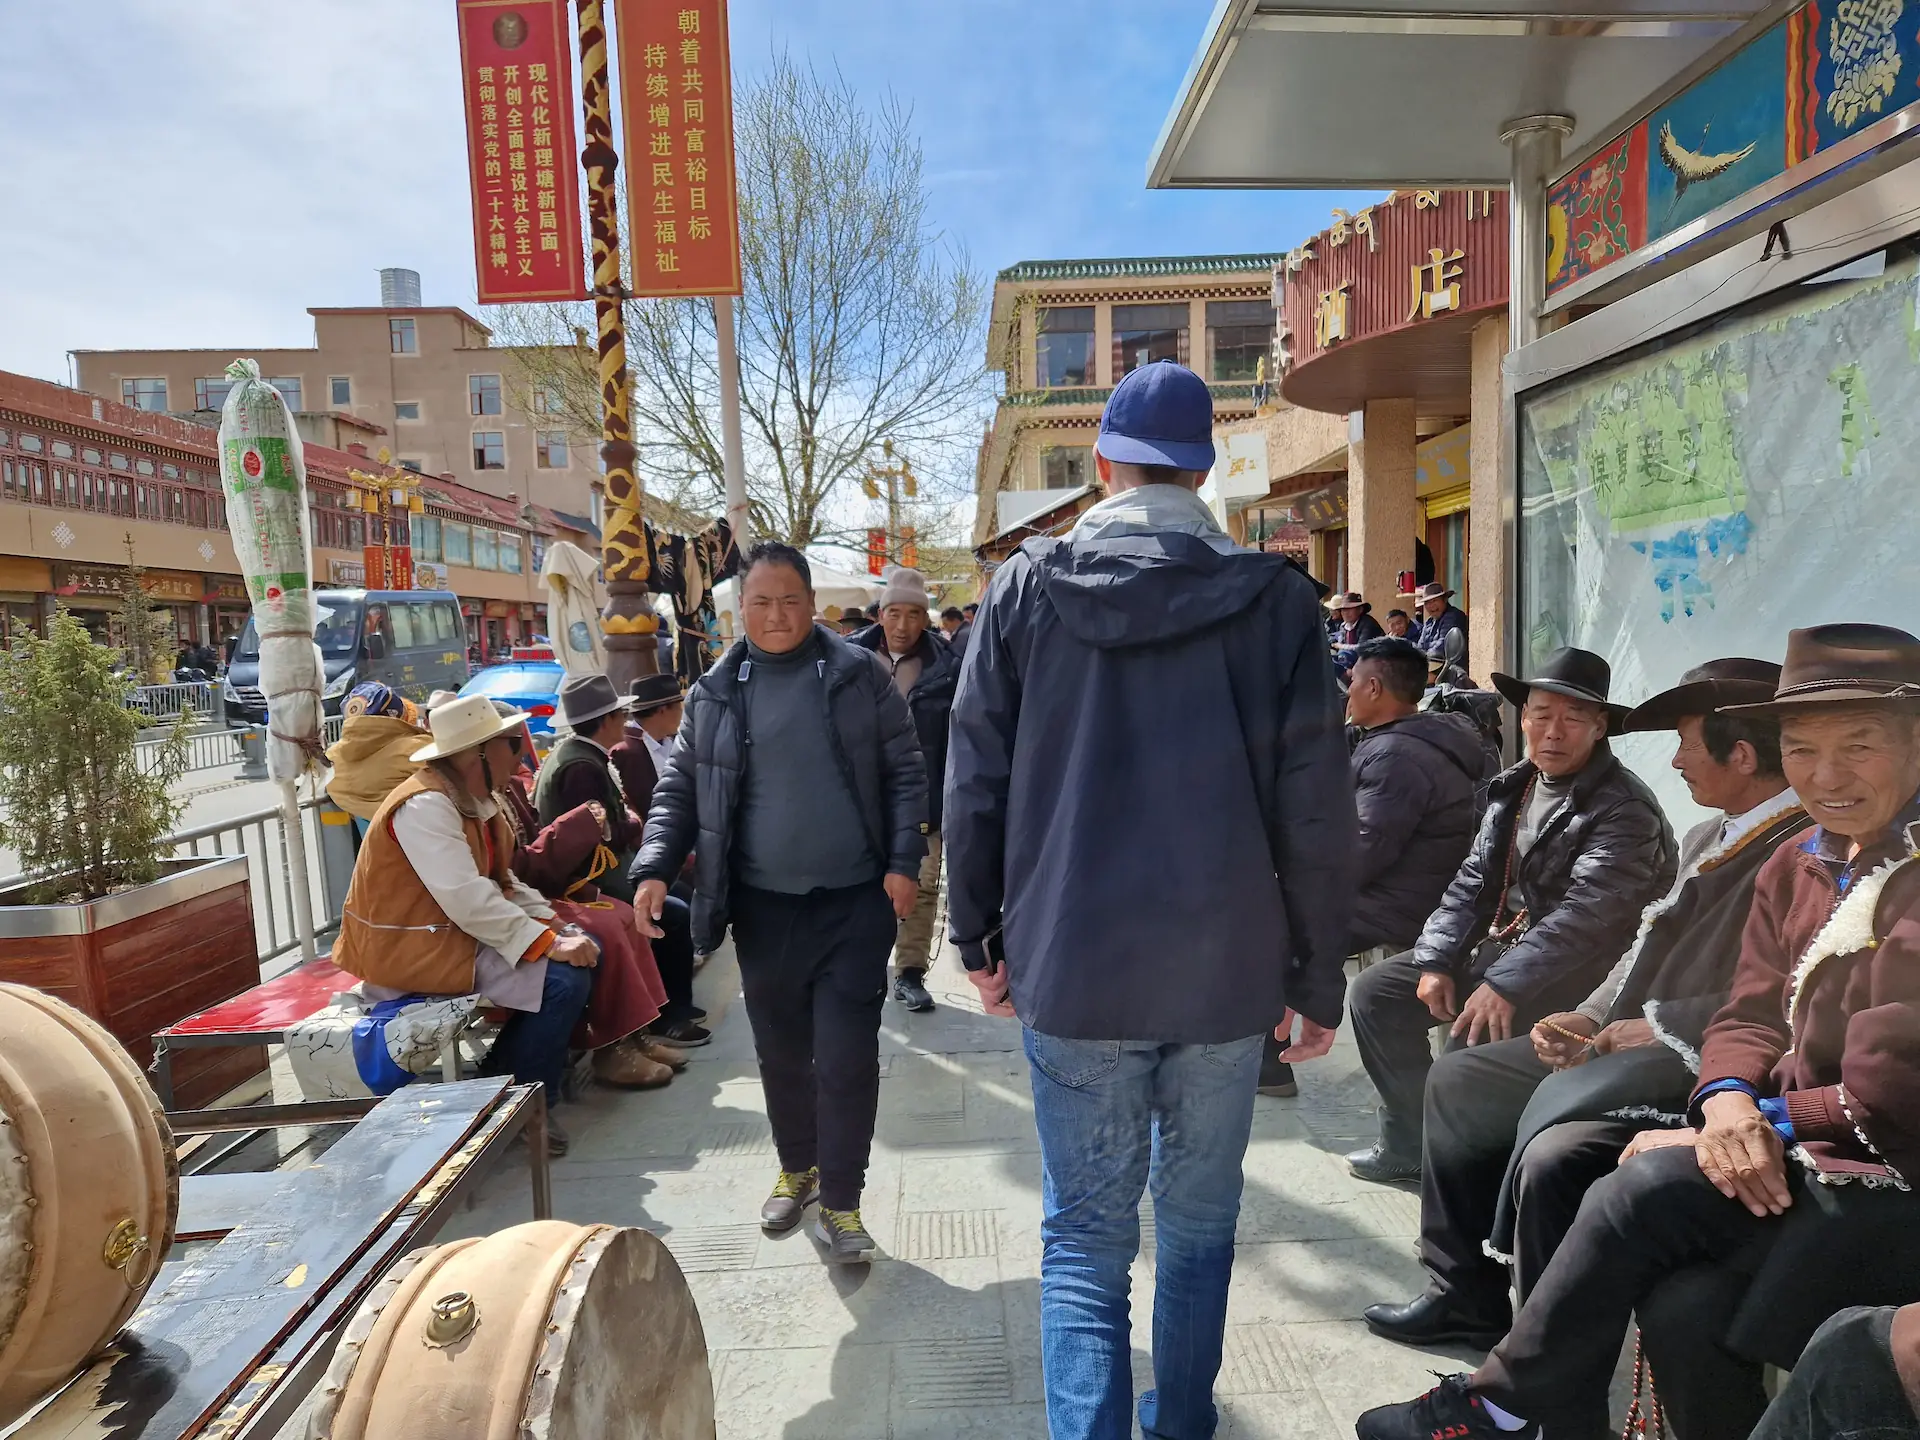 Robin en casquette passe entre deux bancs où sont assis plein de tibétains en chapeaux de cowboy